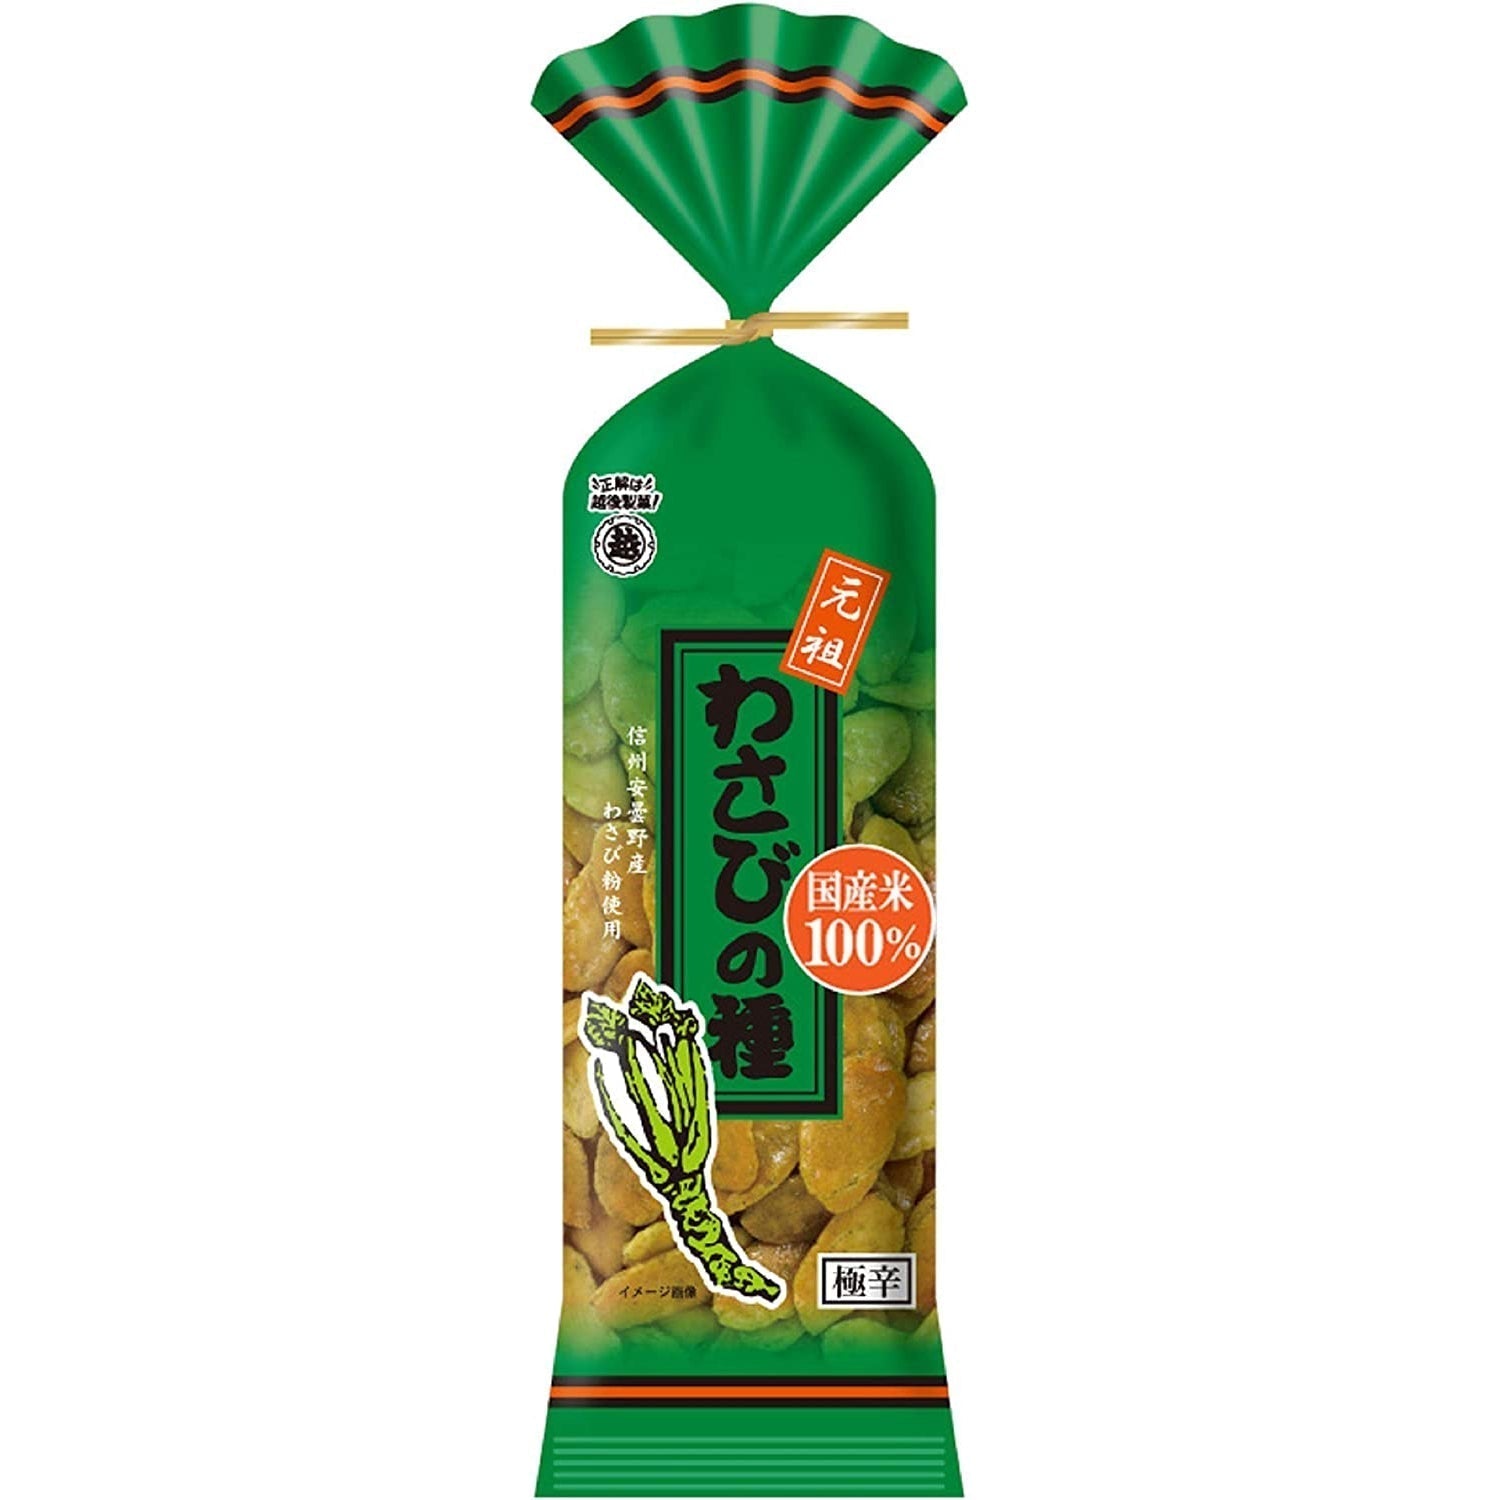 Echigo Seika Wasabi no Tane Wasabi Flavor Rice Crackers 80g (Pack of 5) - YOYO JAPAN